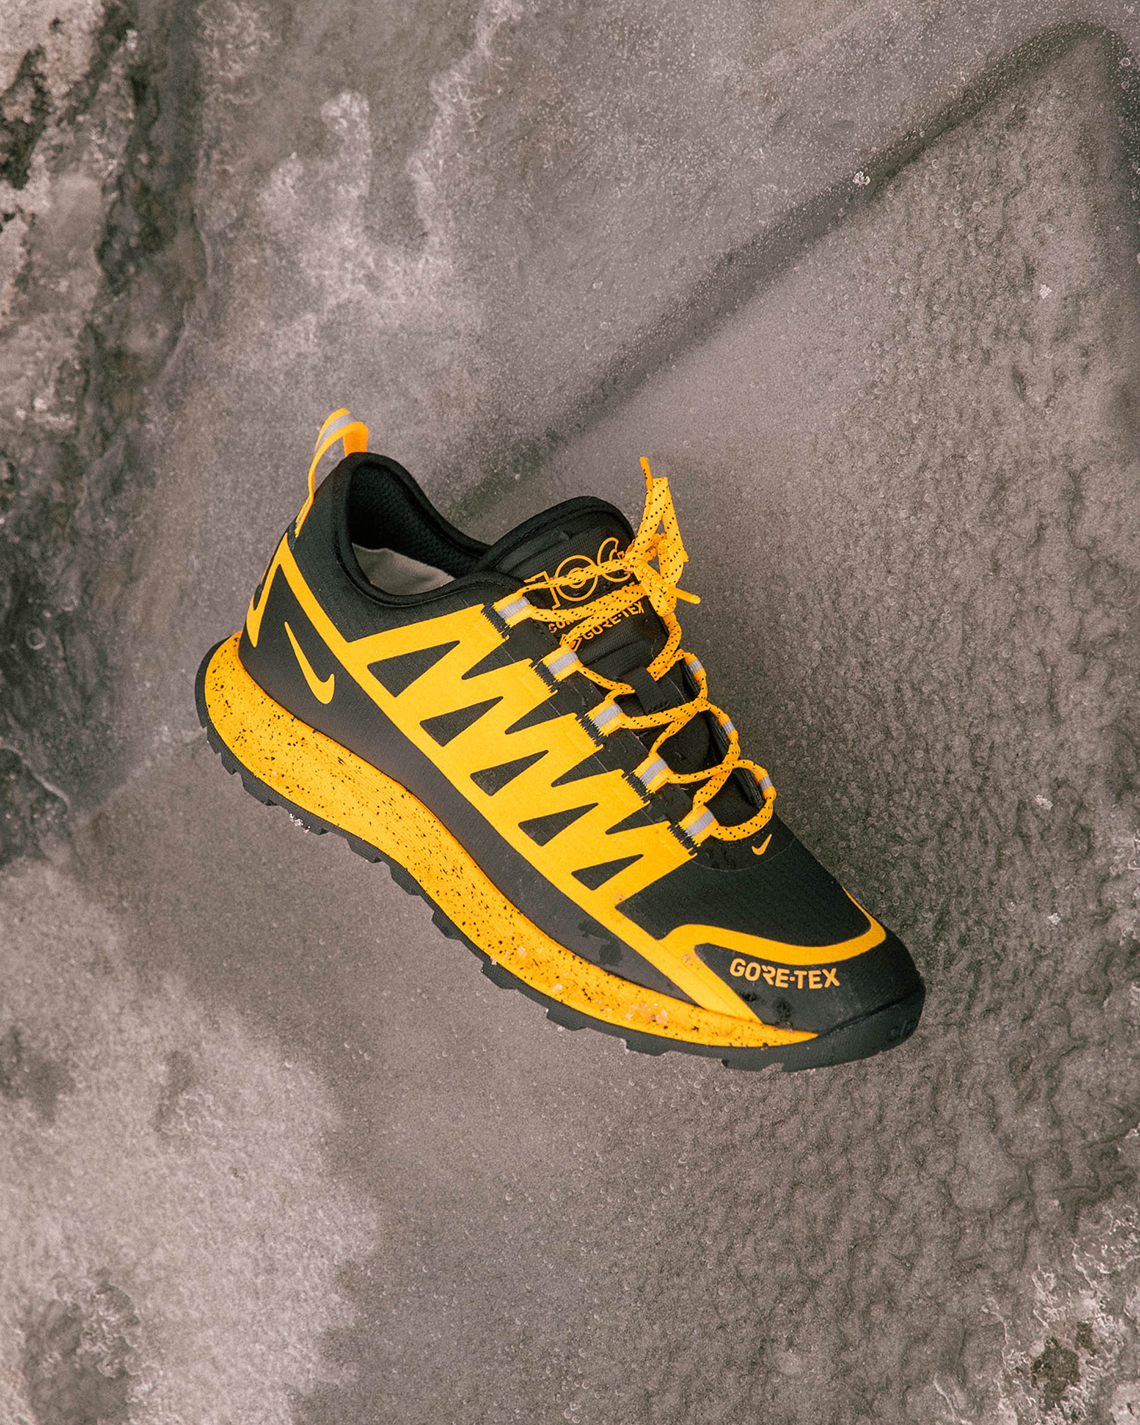 Nike Acg Nasu Goretex Yellow 1